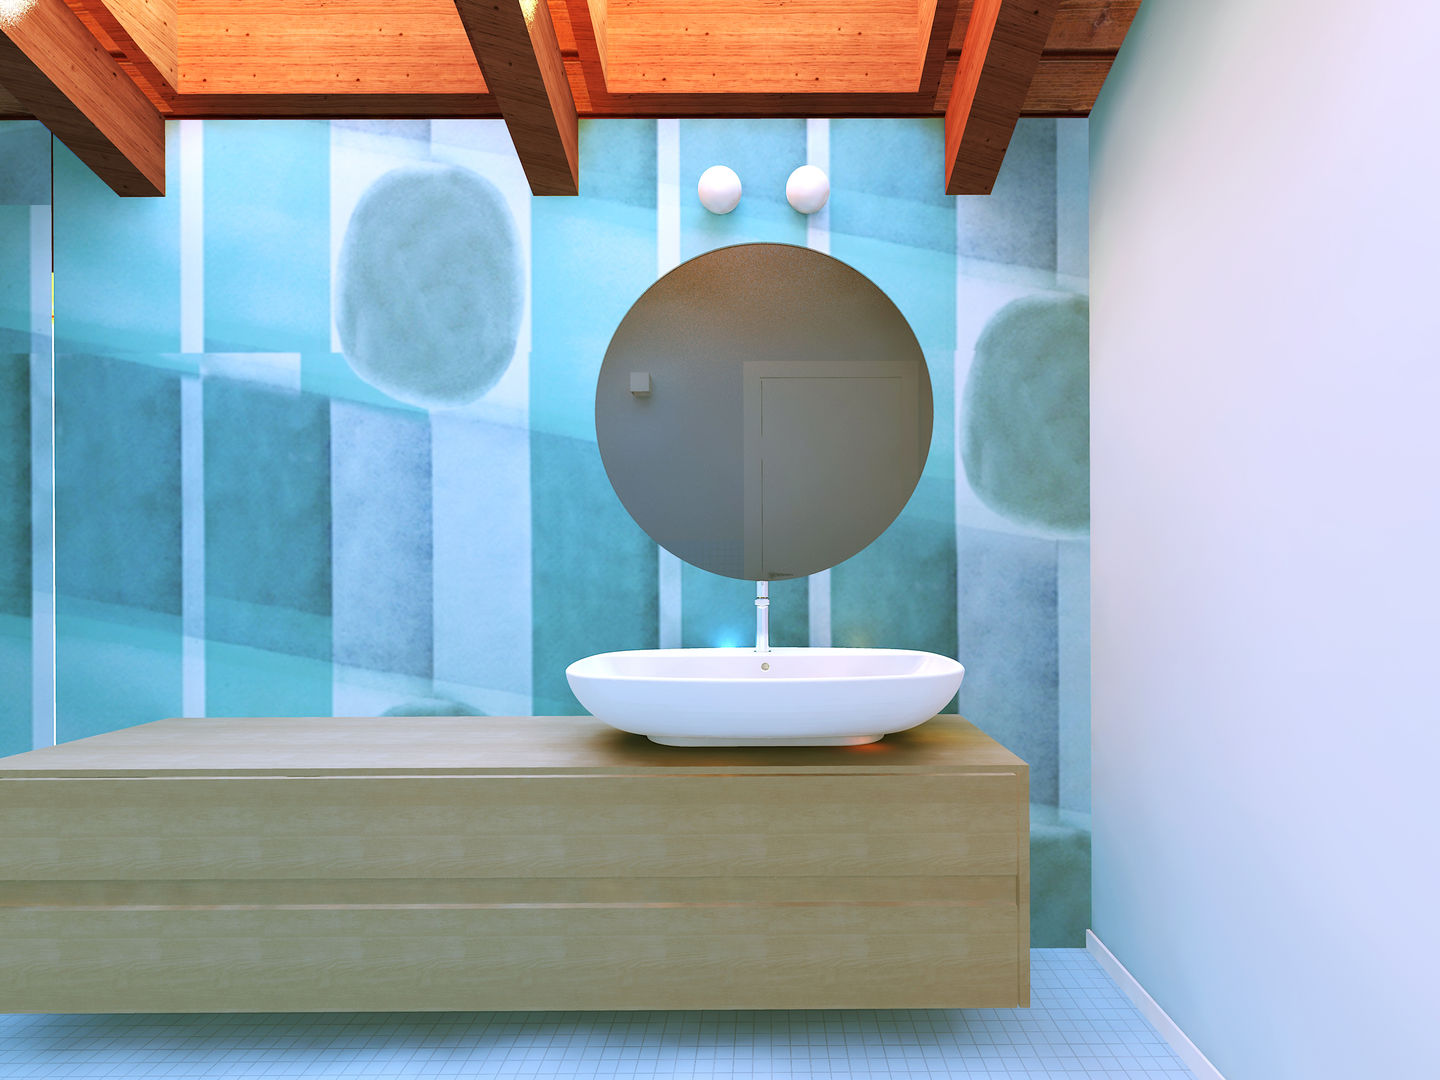 il secondo bagno Flavia Benigni Architetto Bagno moderno illuminazione bagno,lavabo doppio,lavabo bagno,arredo bagno,specchio bagno,carta da parati